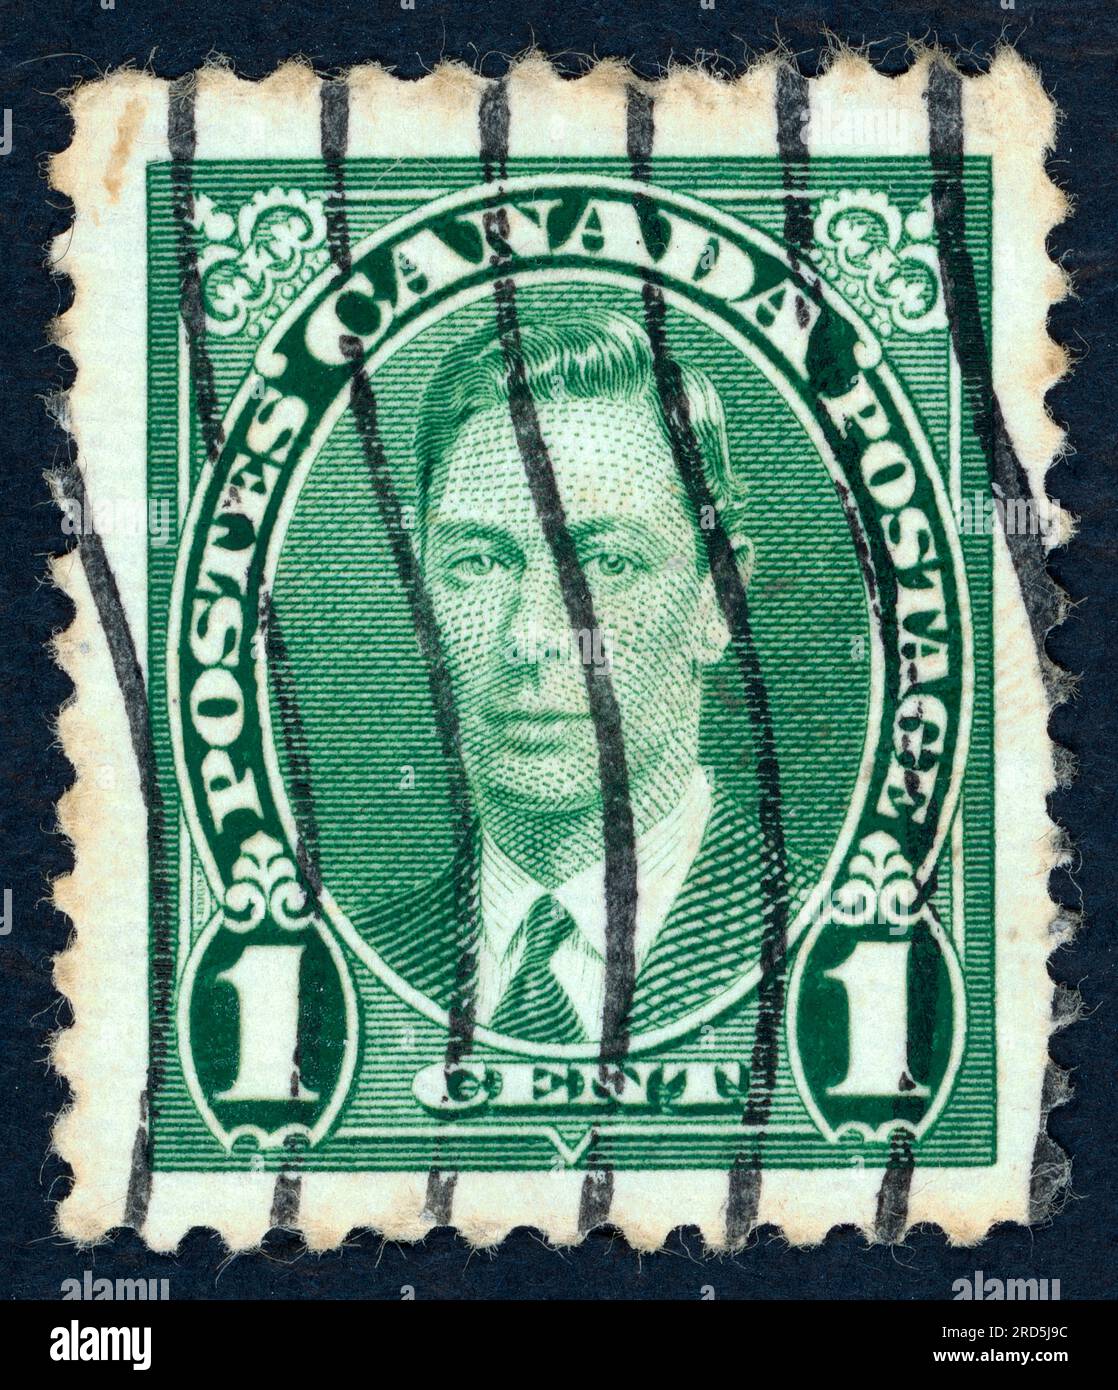 George VI. (Albert Frederick Arthur George; 1895–1952), König des Vereinigten Königreichs und der Dominions des British Commonwealth von 1936 bis zu seinem Tod 1952. Briefmarke, ausgestellt in Kanada im Jahr 1937. Stockfoto